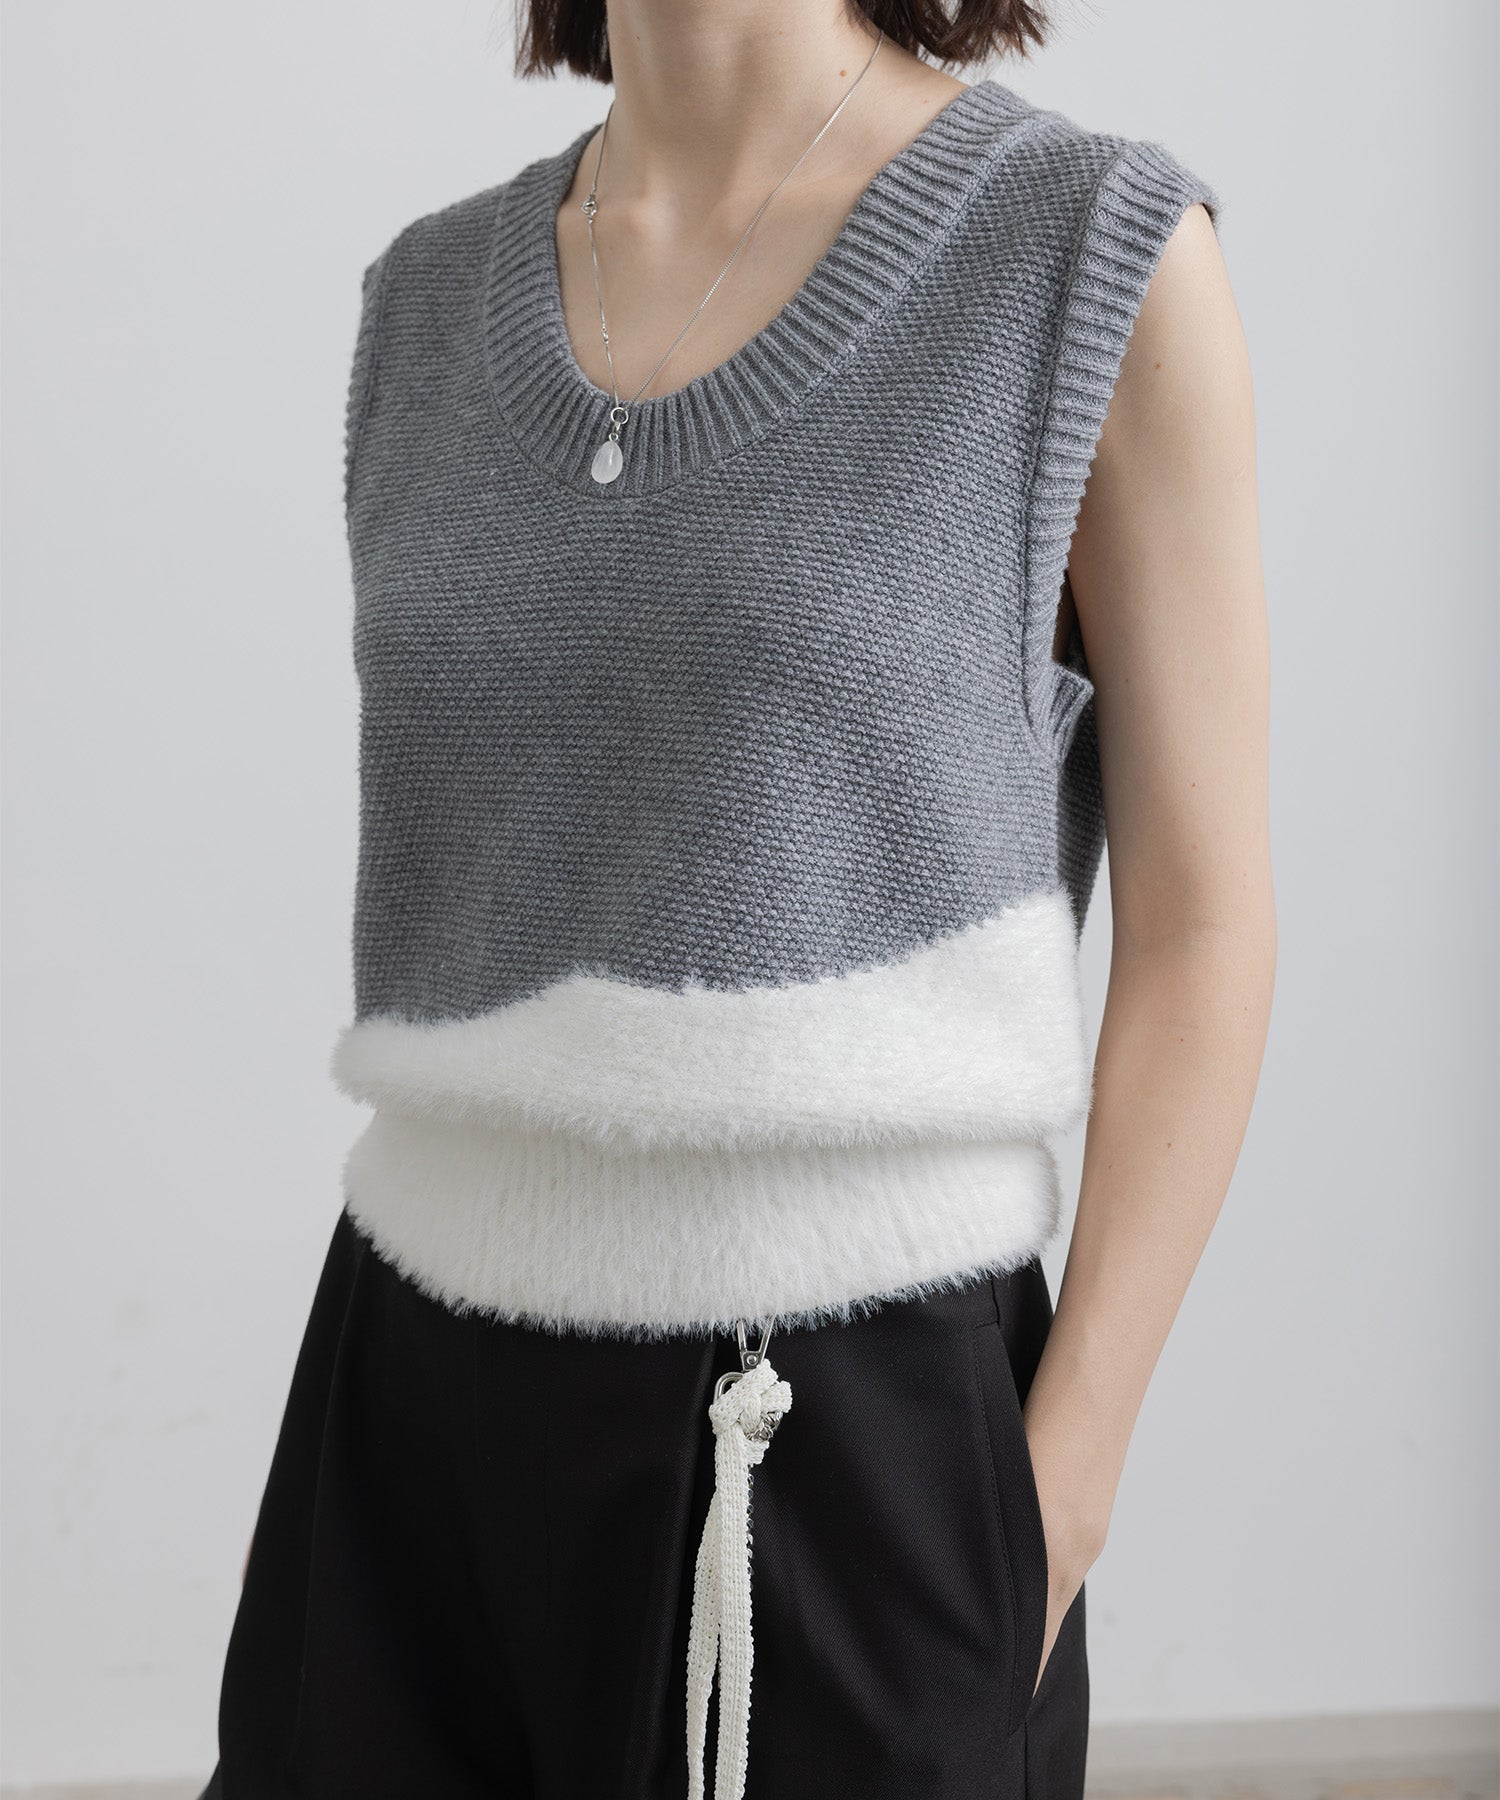 Wave docking knit vest